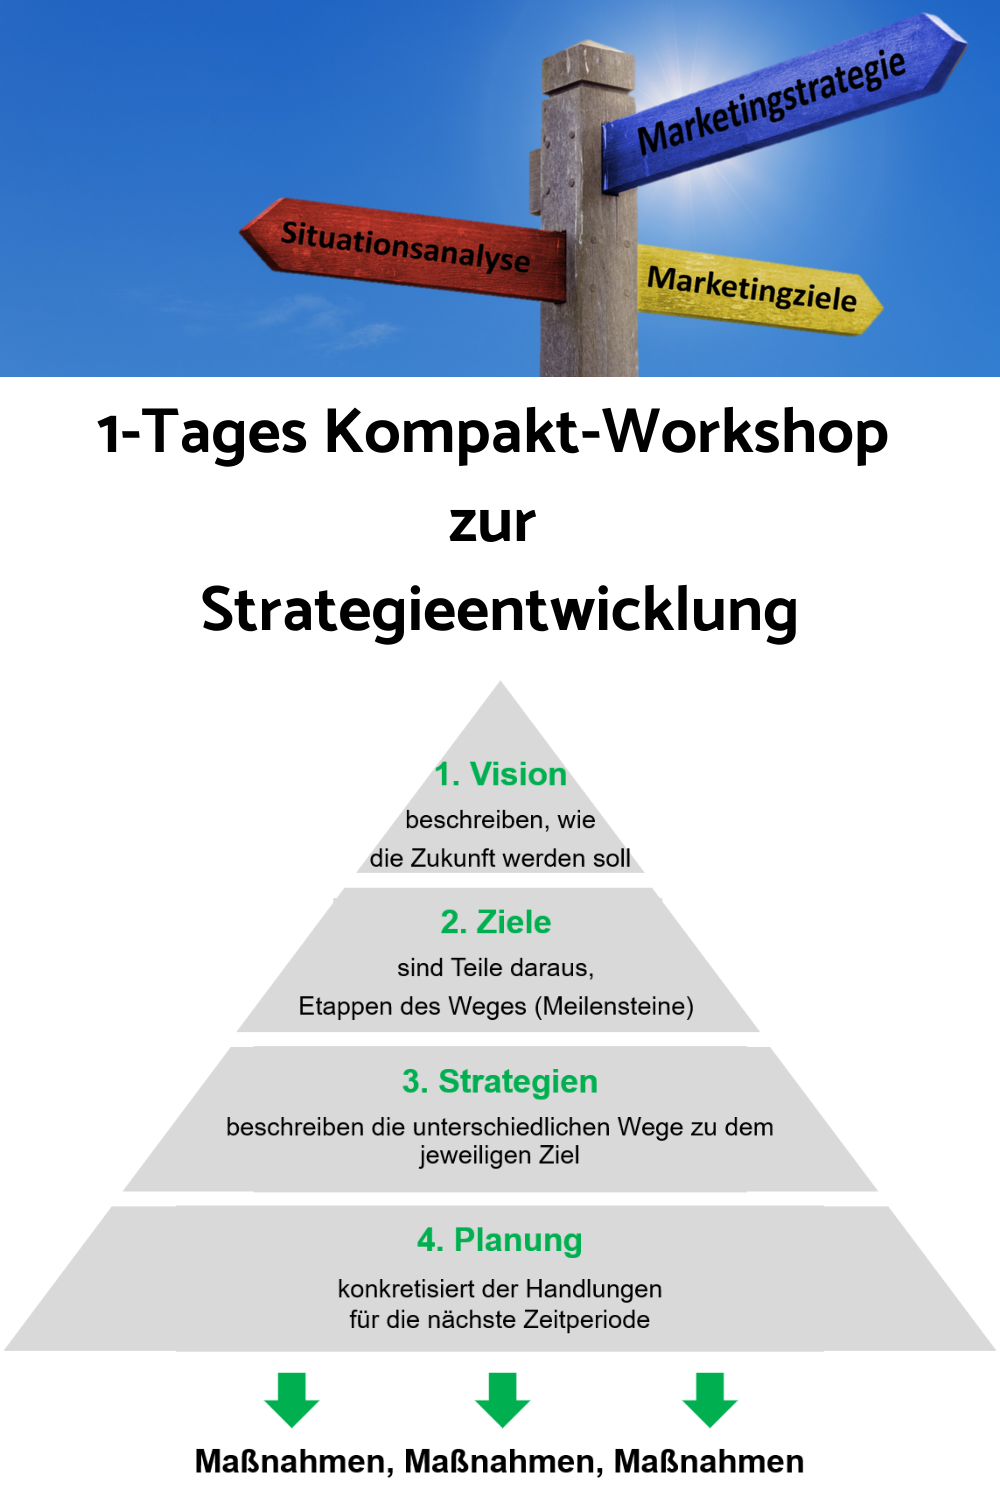 1-Tages Kompakt-Workshop zur Strategieentwicklung